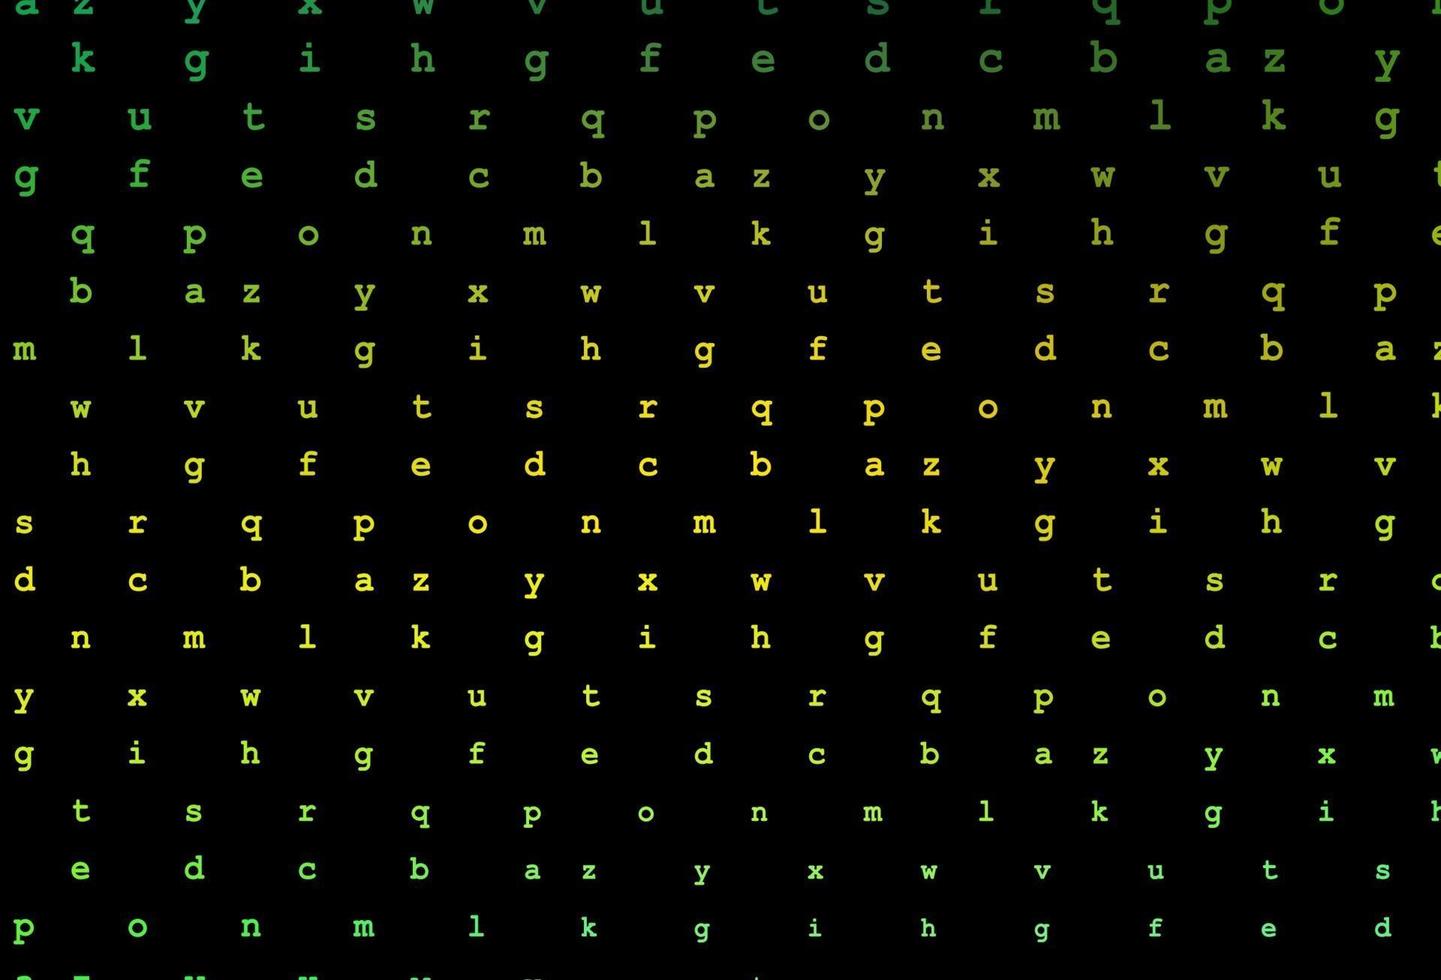 textura de vetor verde e amarelo escuro com caracteres abc.